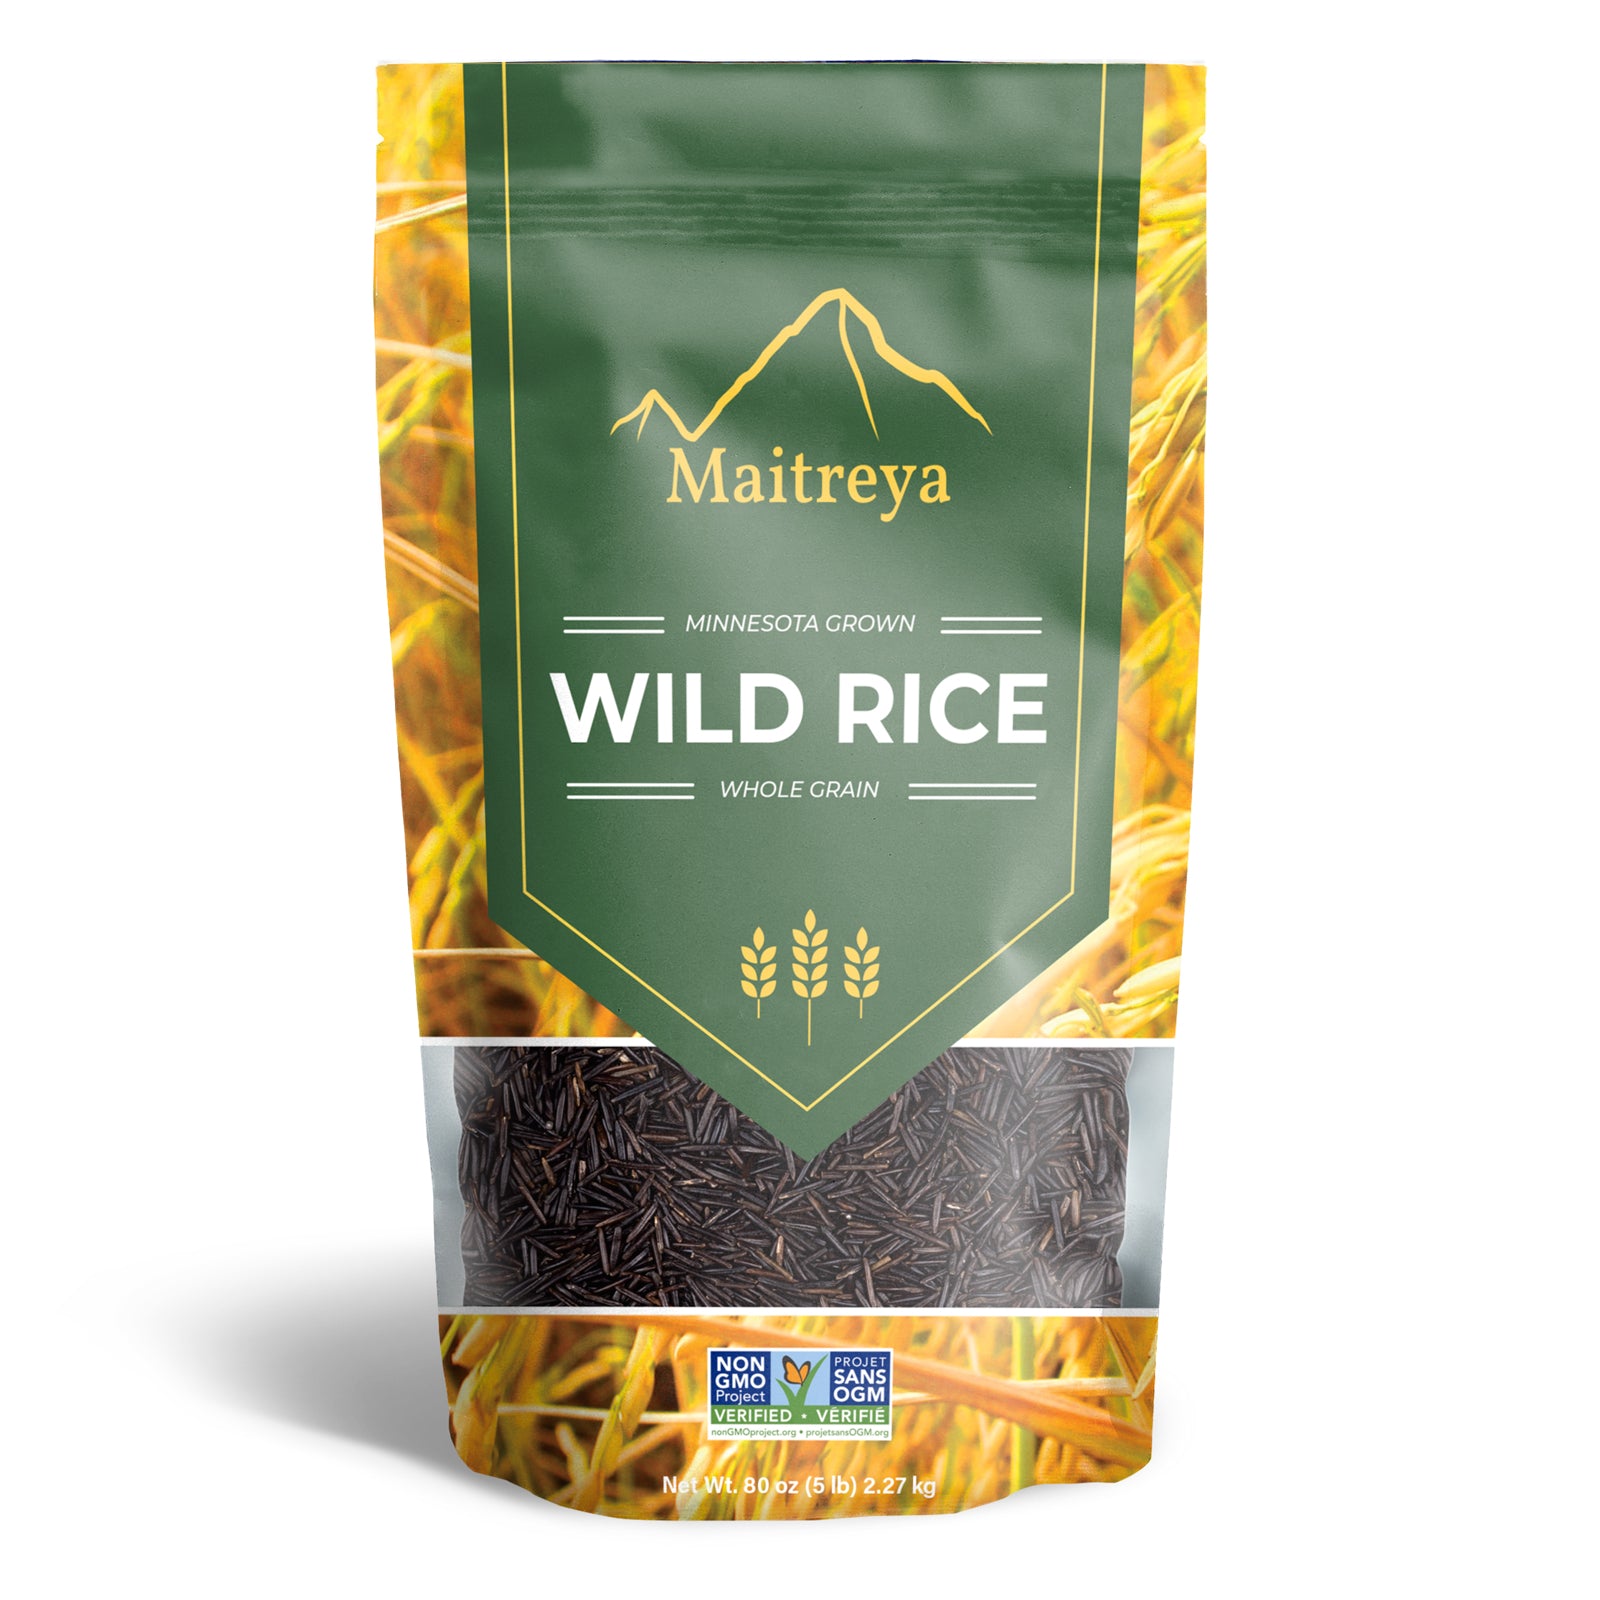 Wild Rice